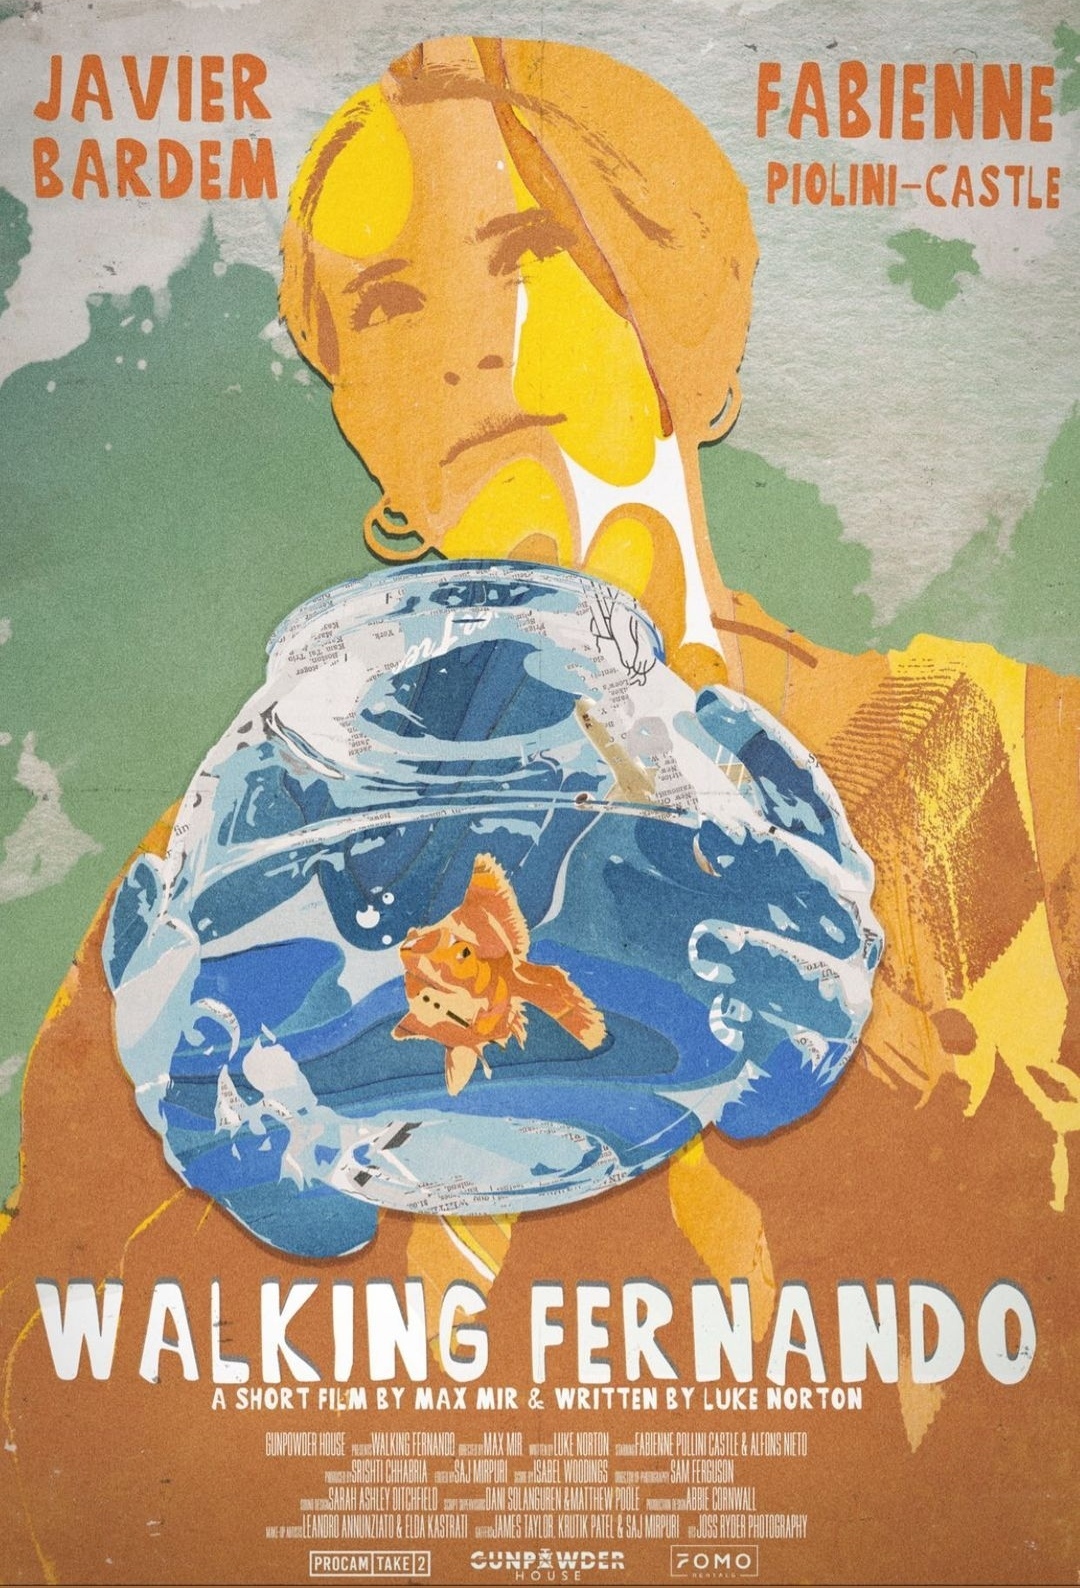 Walking Fernando